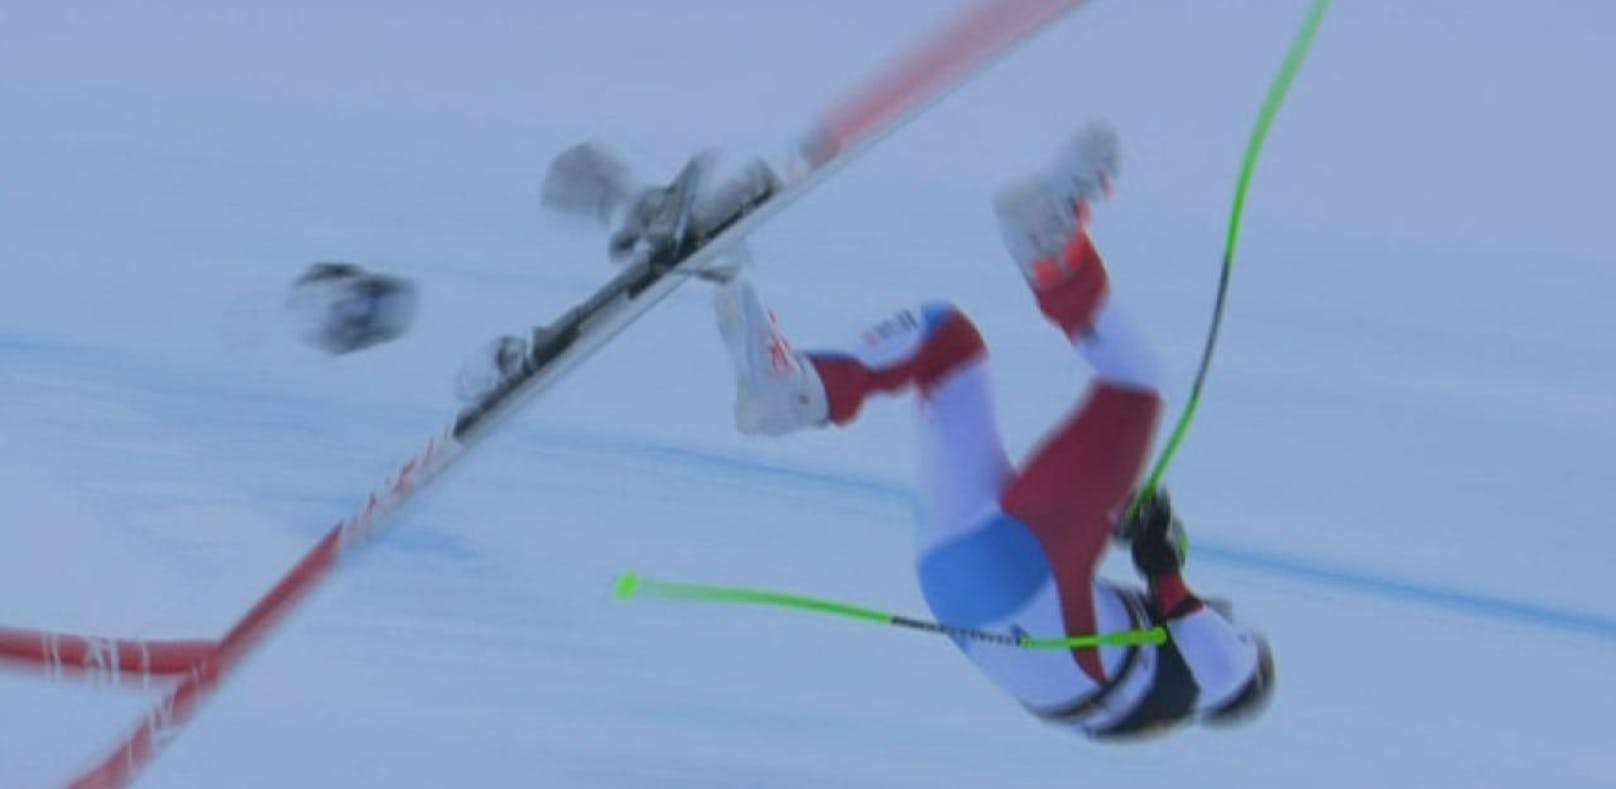 Gisin-Sturz: Ist Skisport nicht sicher genug?